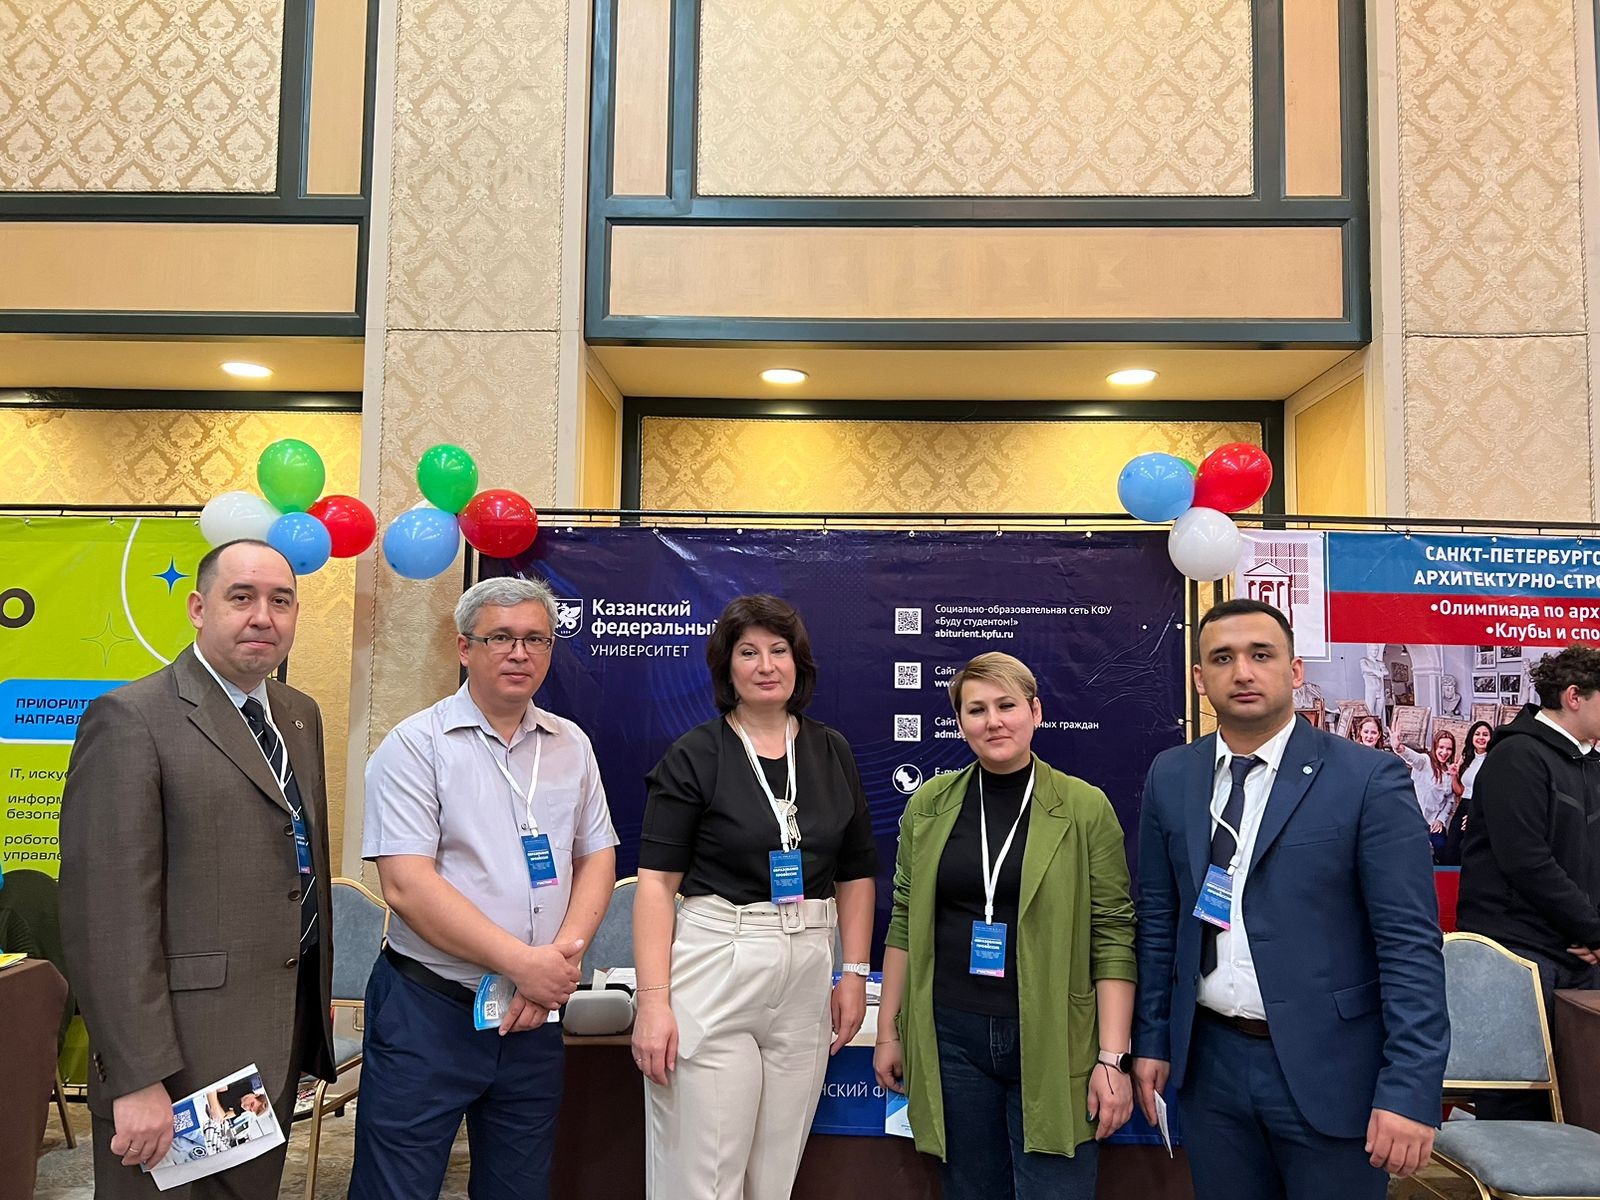 7 и 8 апреля дирекция Института физики приняла участие в образовательной выставке в городе Ташкент!